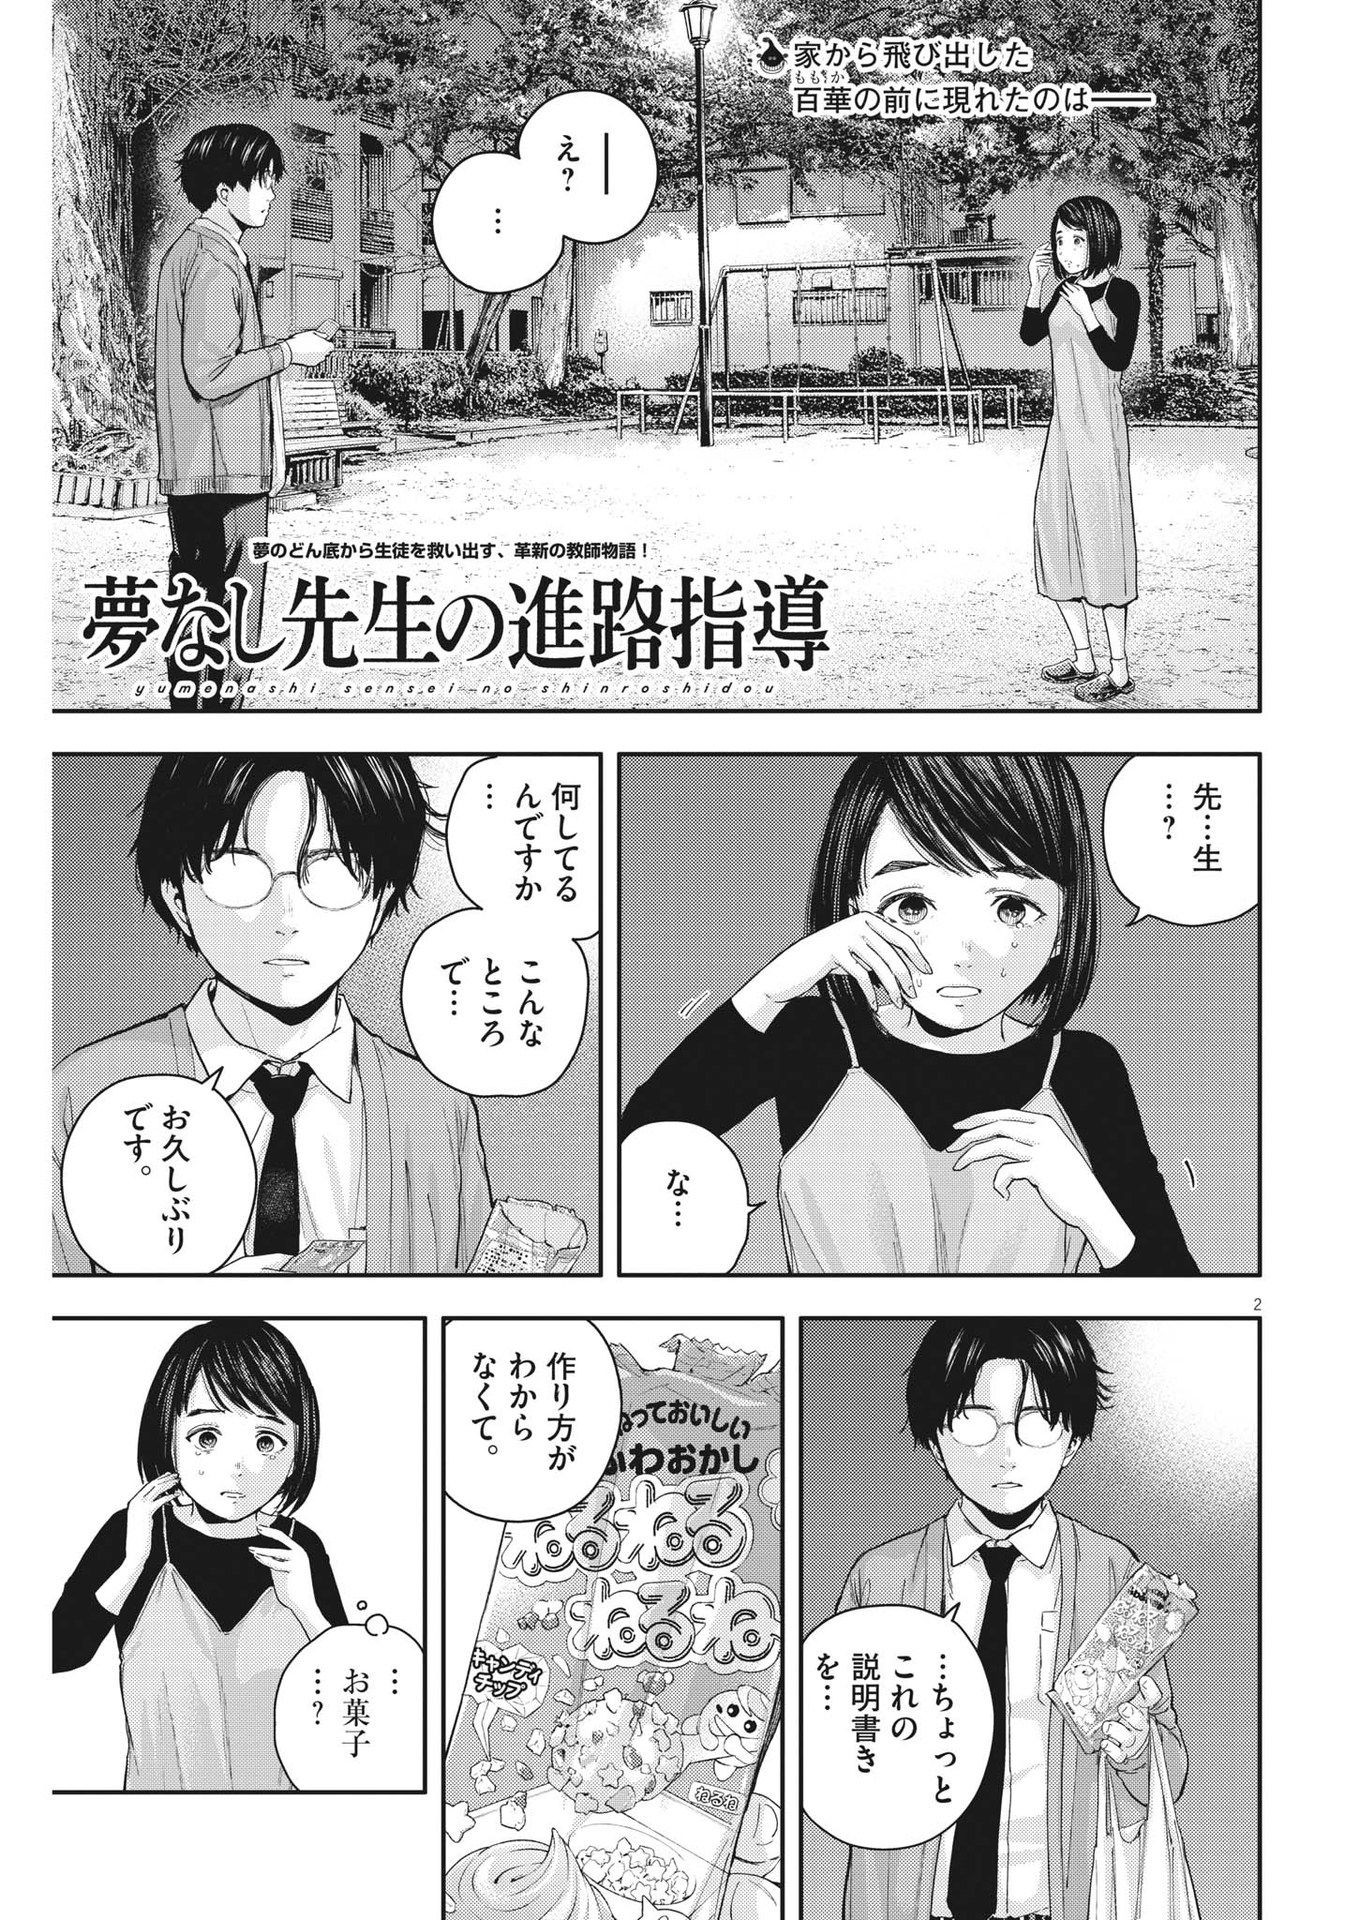 Yumenashi-sensei no Shinroshidou - Chapter 24 - Page 2